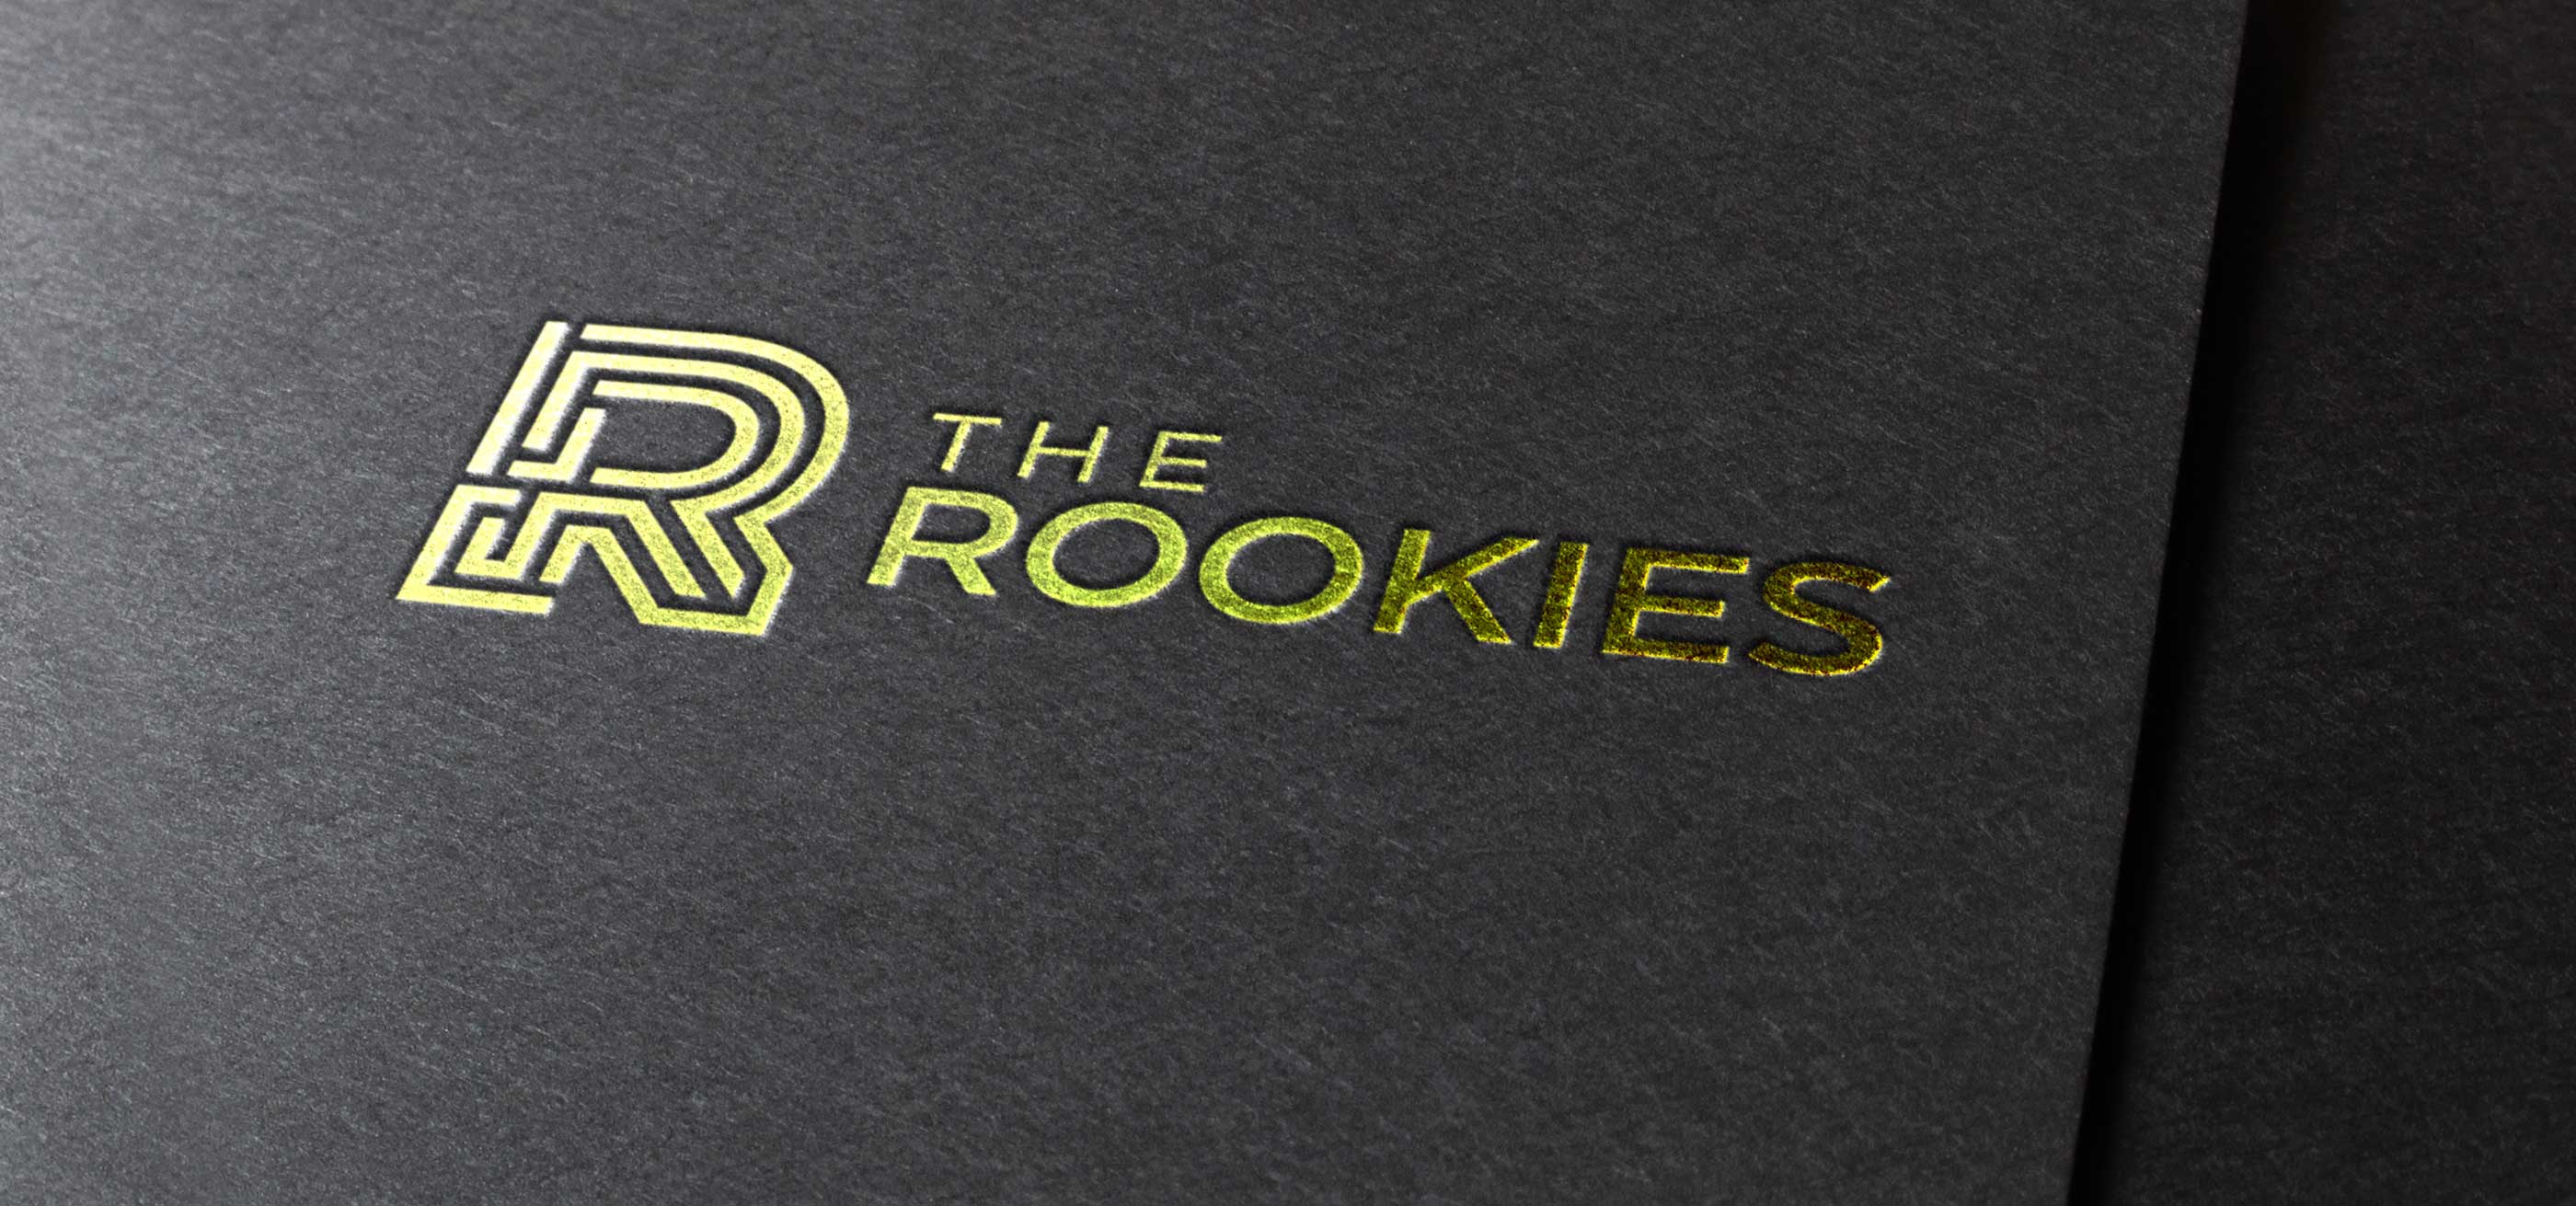 Logotipo dorado de ROOKIES estampado en pergamino negro